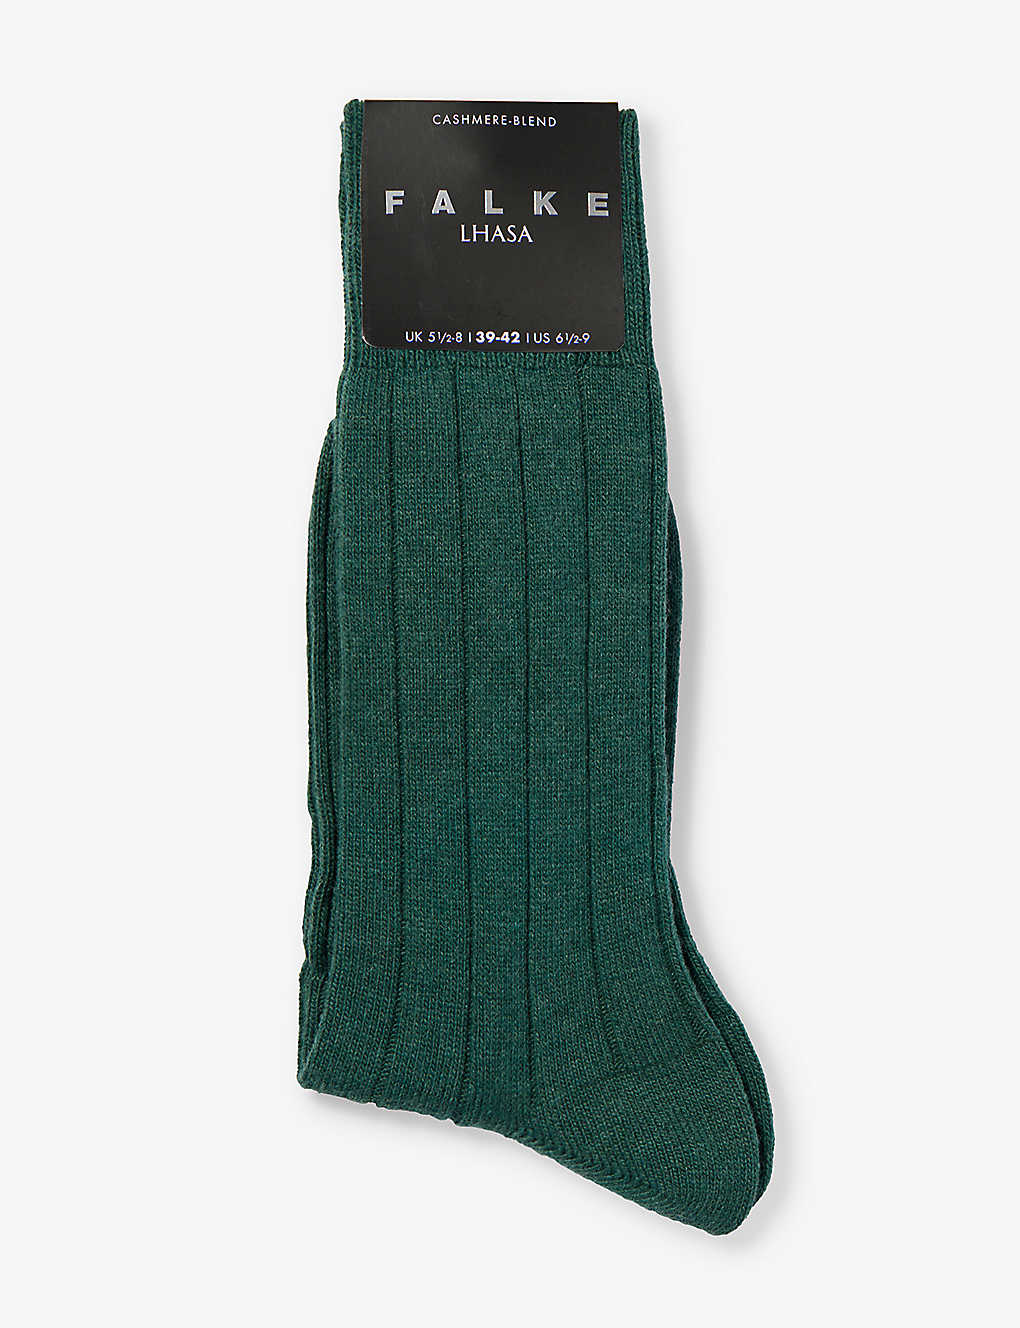 Falke Mens Hunter Green Lhasa Ribbed Ankle-rise Woven-blend Socks